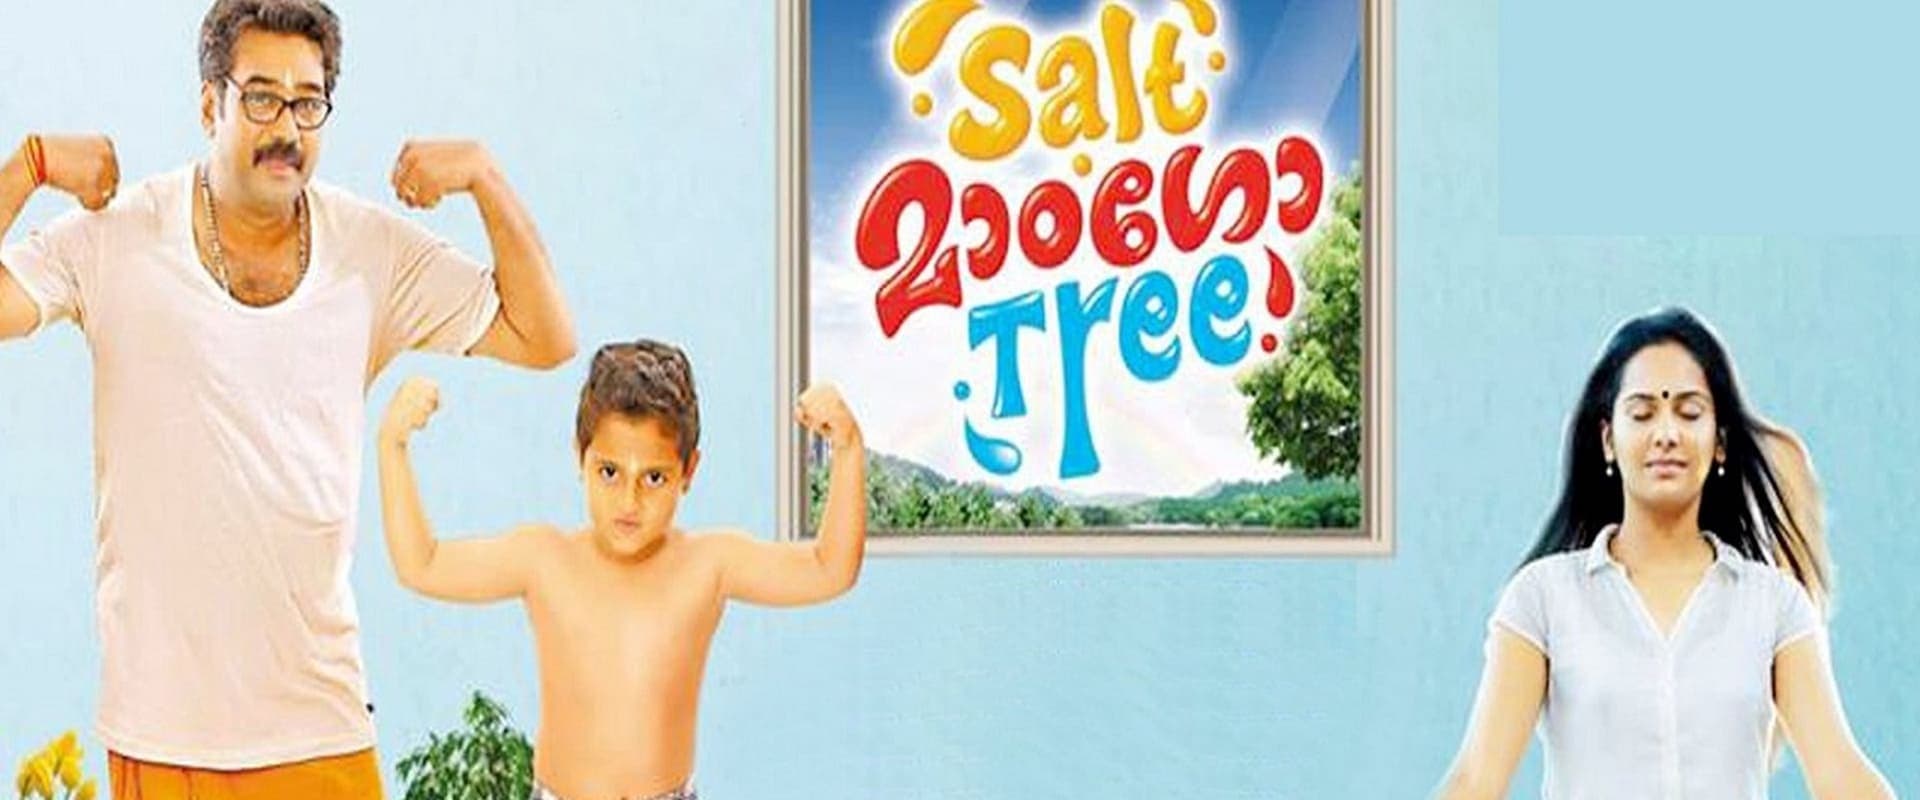 Salt Mango Tree